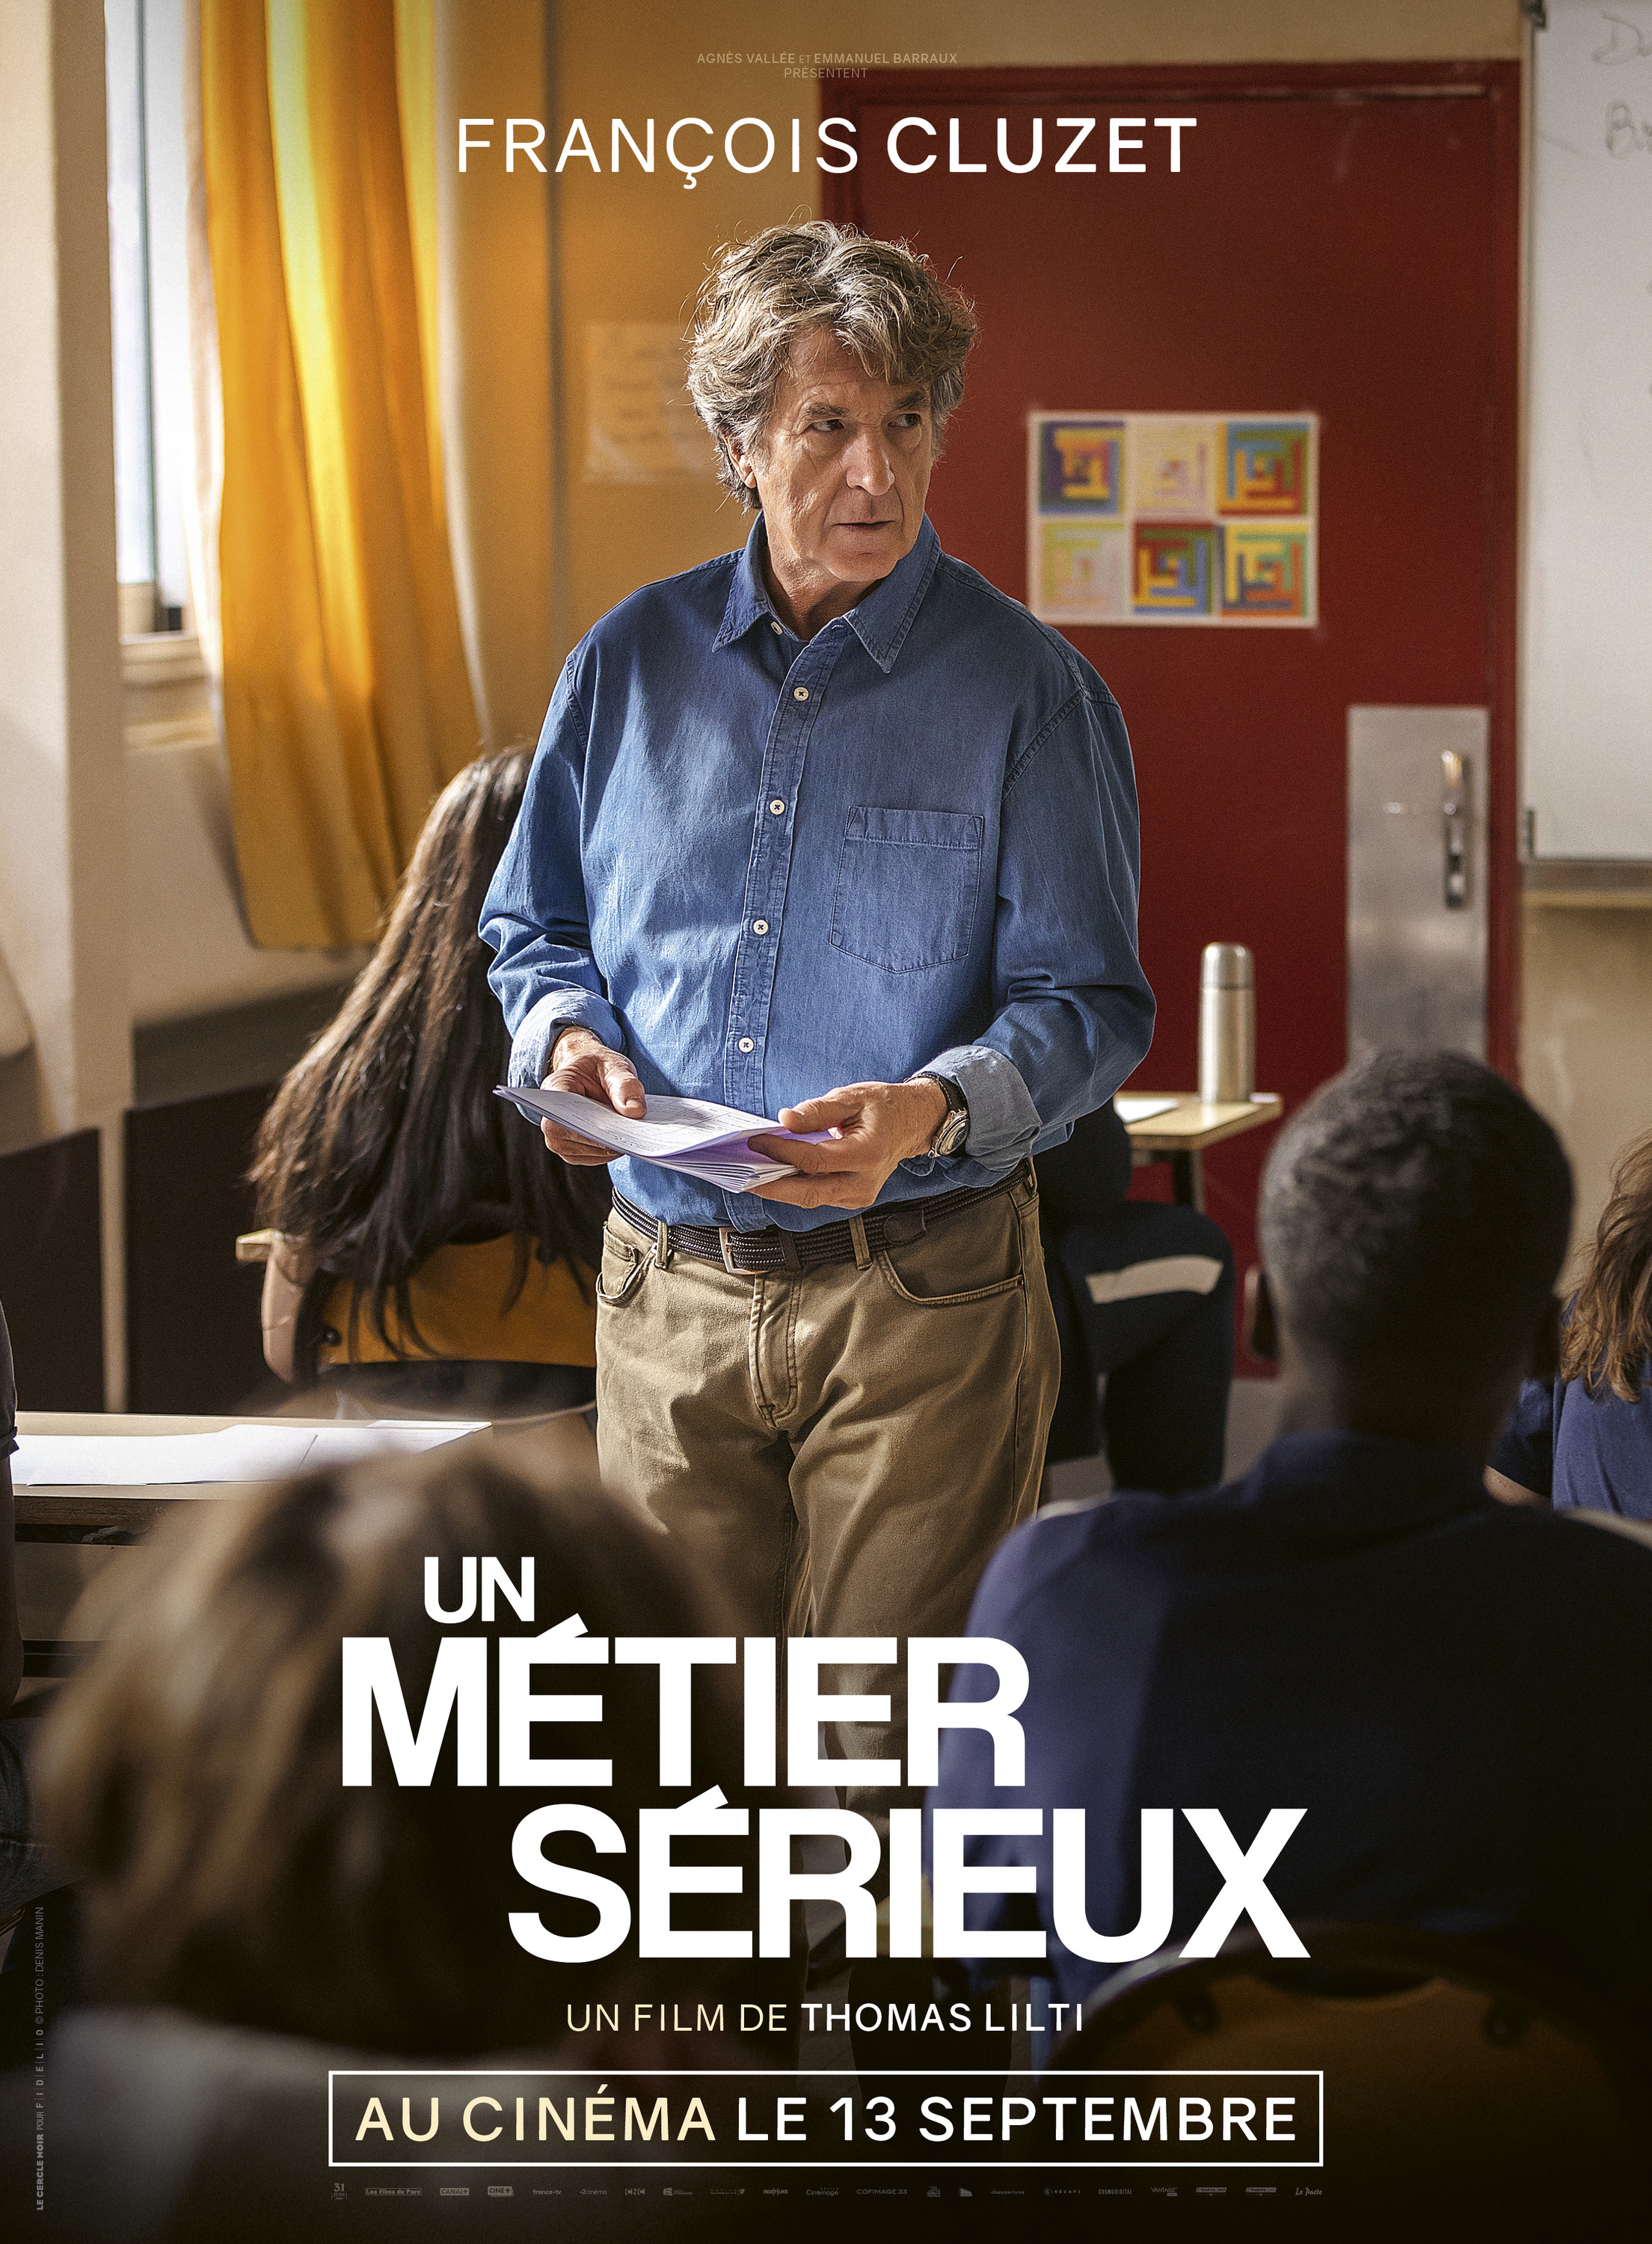 Mega Sized Movie Poster Image for Un métier sérieux (#3 of 7)